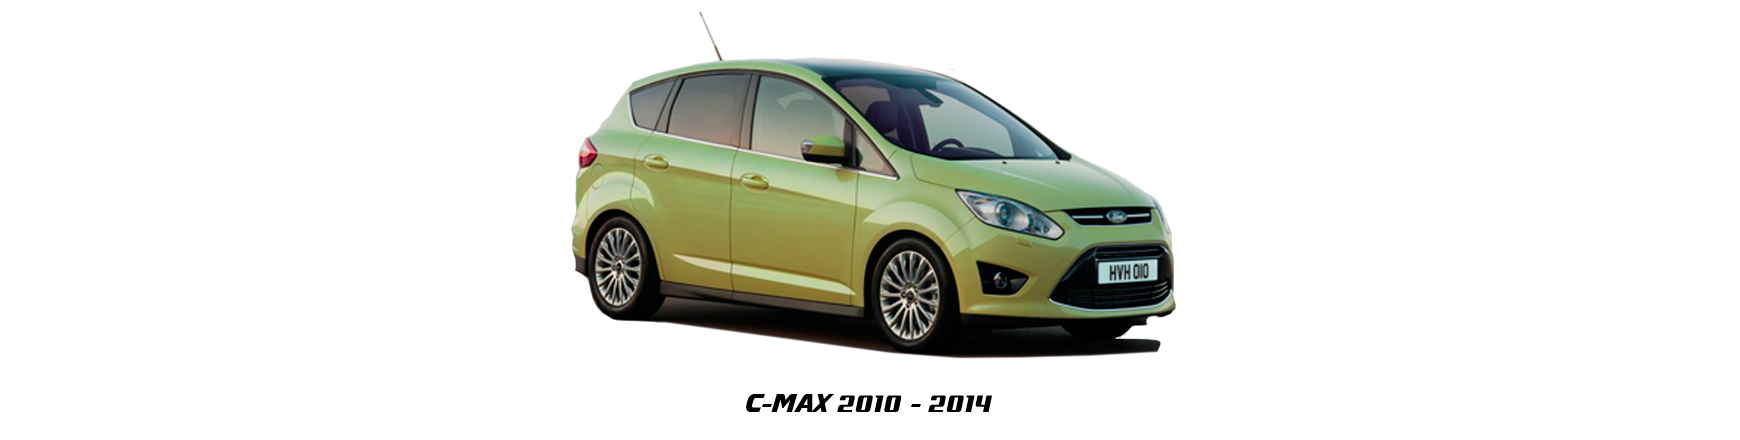 Recambios de Ford C-Max de 201, 2011, 2012, 2013, 2014 y 2015.